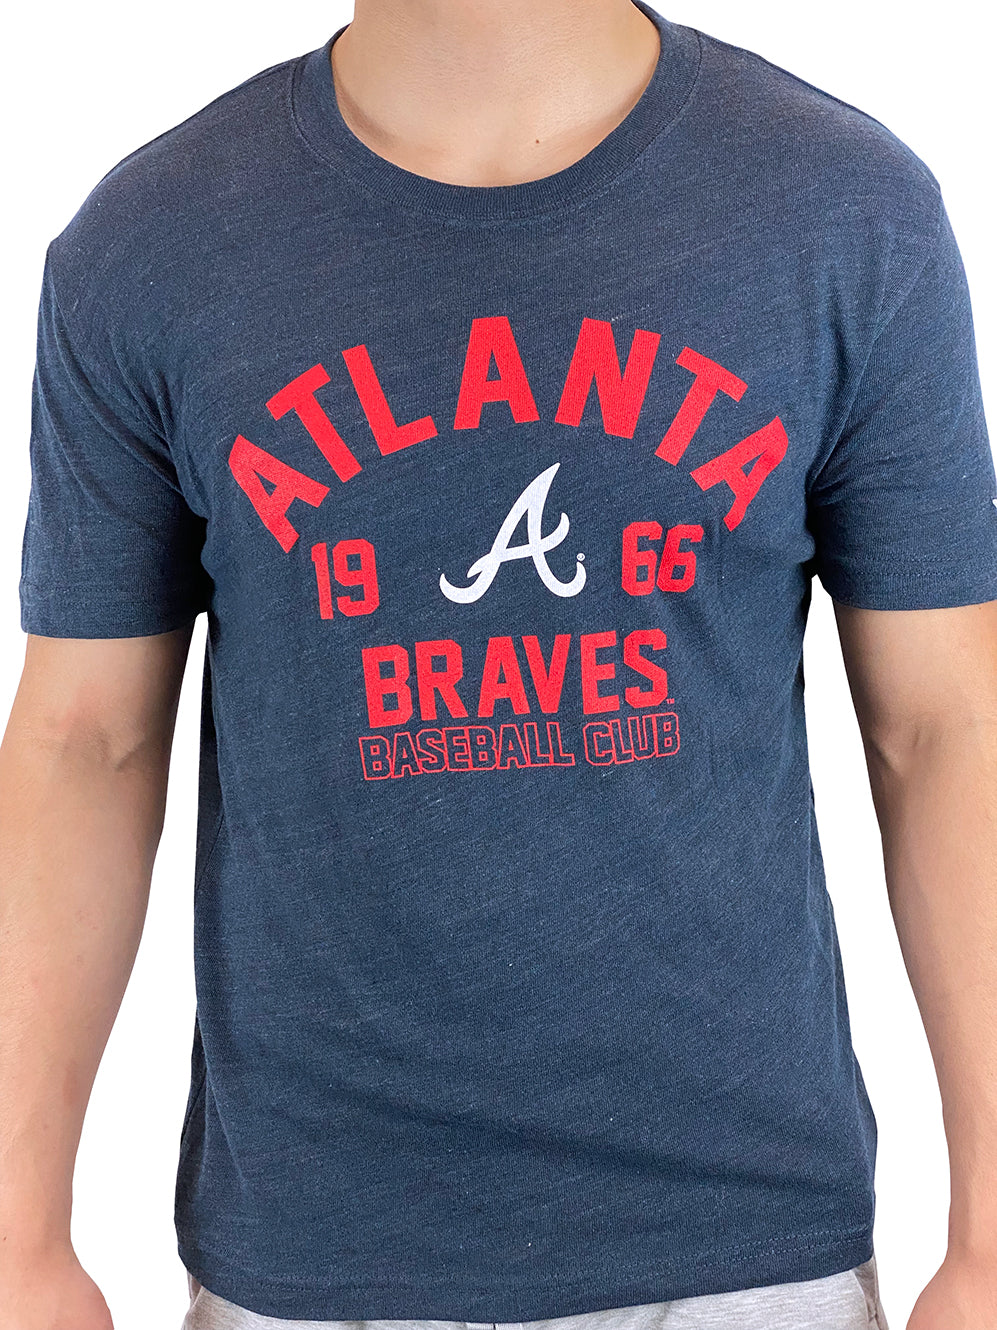 Atlanta Braves Camisetas, Braves Camisetas, Camisas